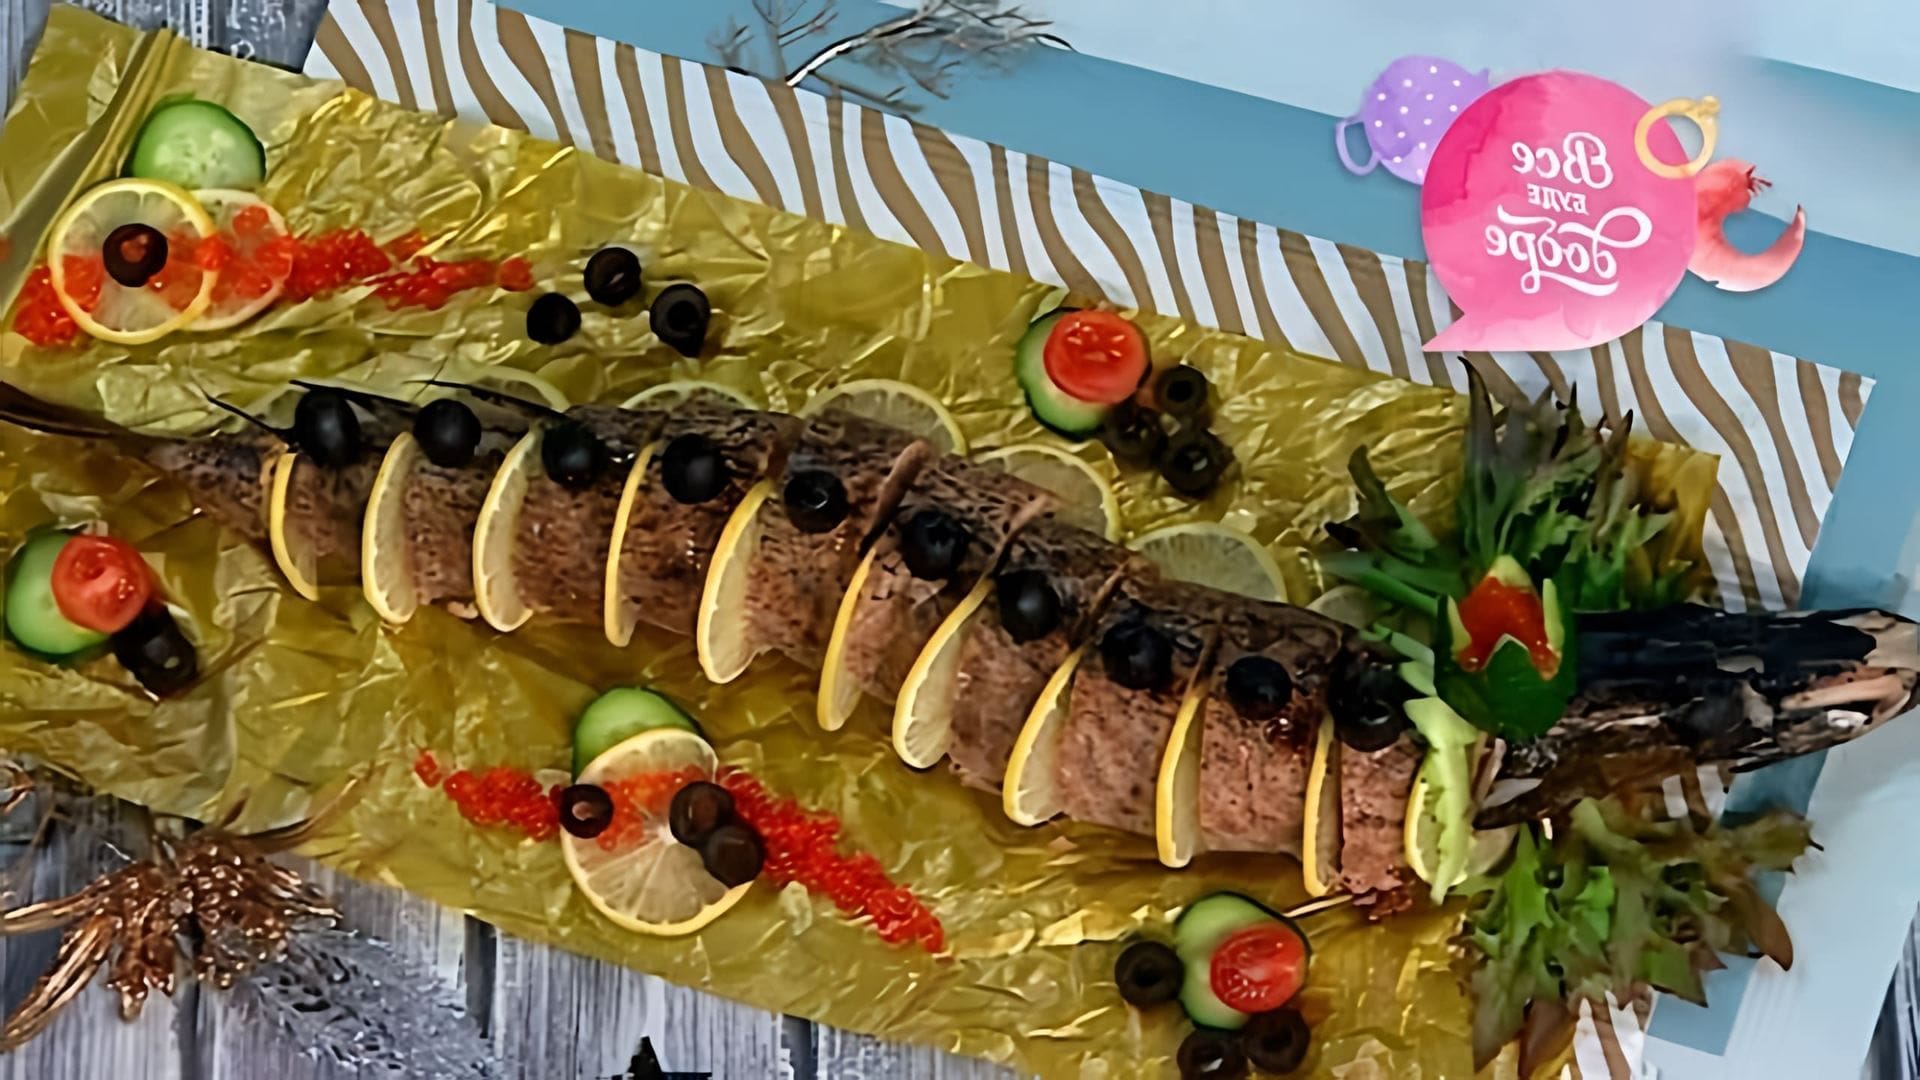 Фаршированная щука с сухофруктами: пошаговый рецепт - это видео-ролик, в котором демонстрируется процесс приготовления вкусного и оригинального блюда